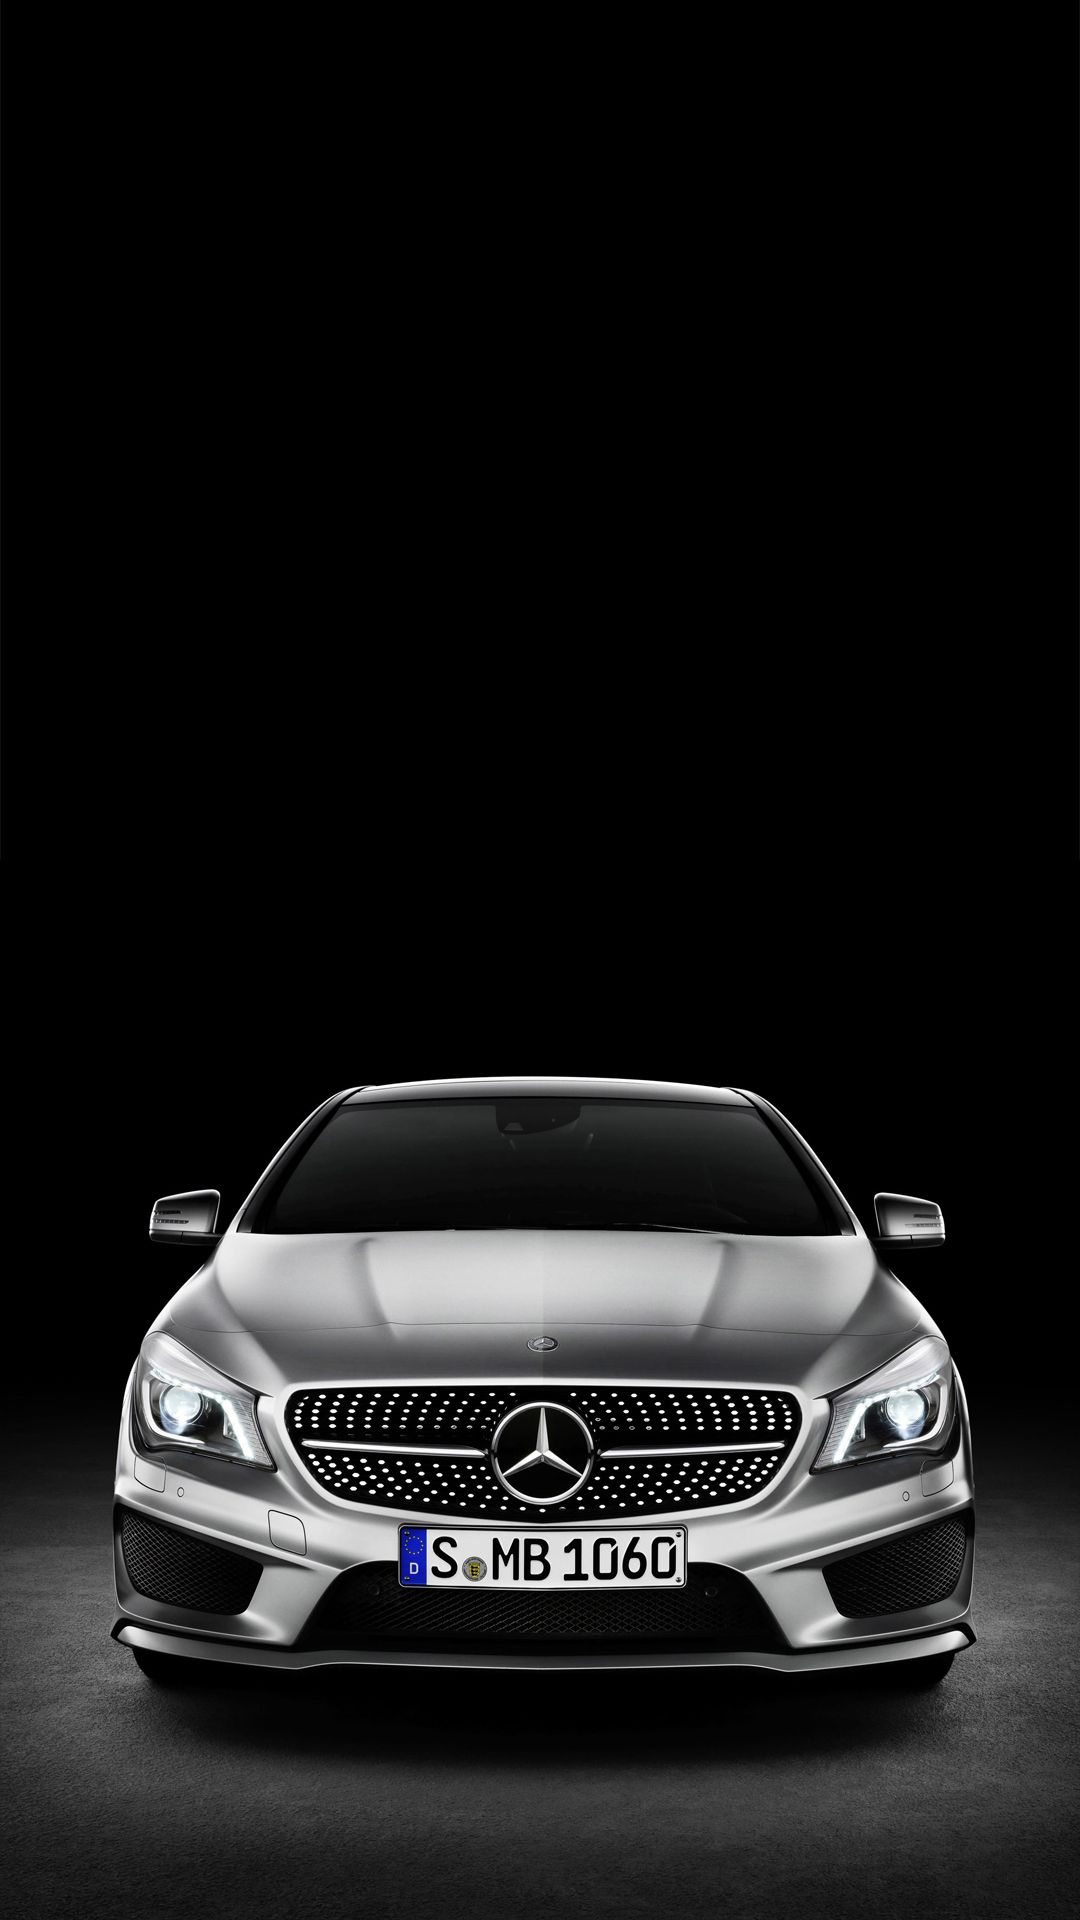 Mercedes Benz CLA Class htc one 1080x1920 wallpaper